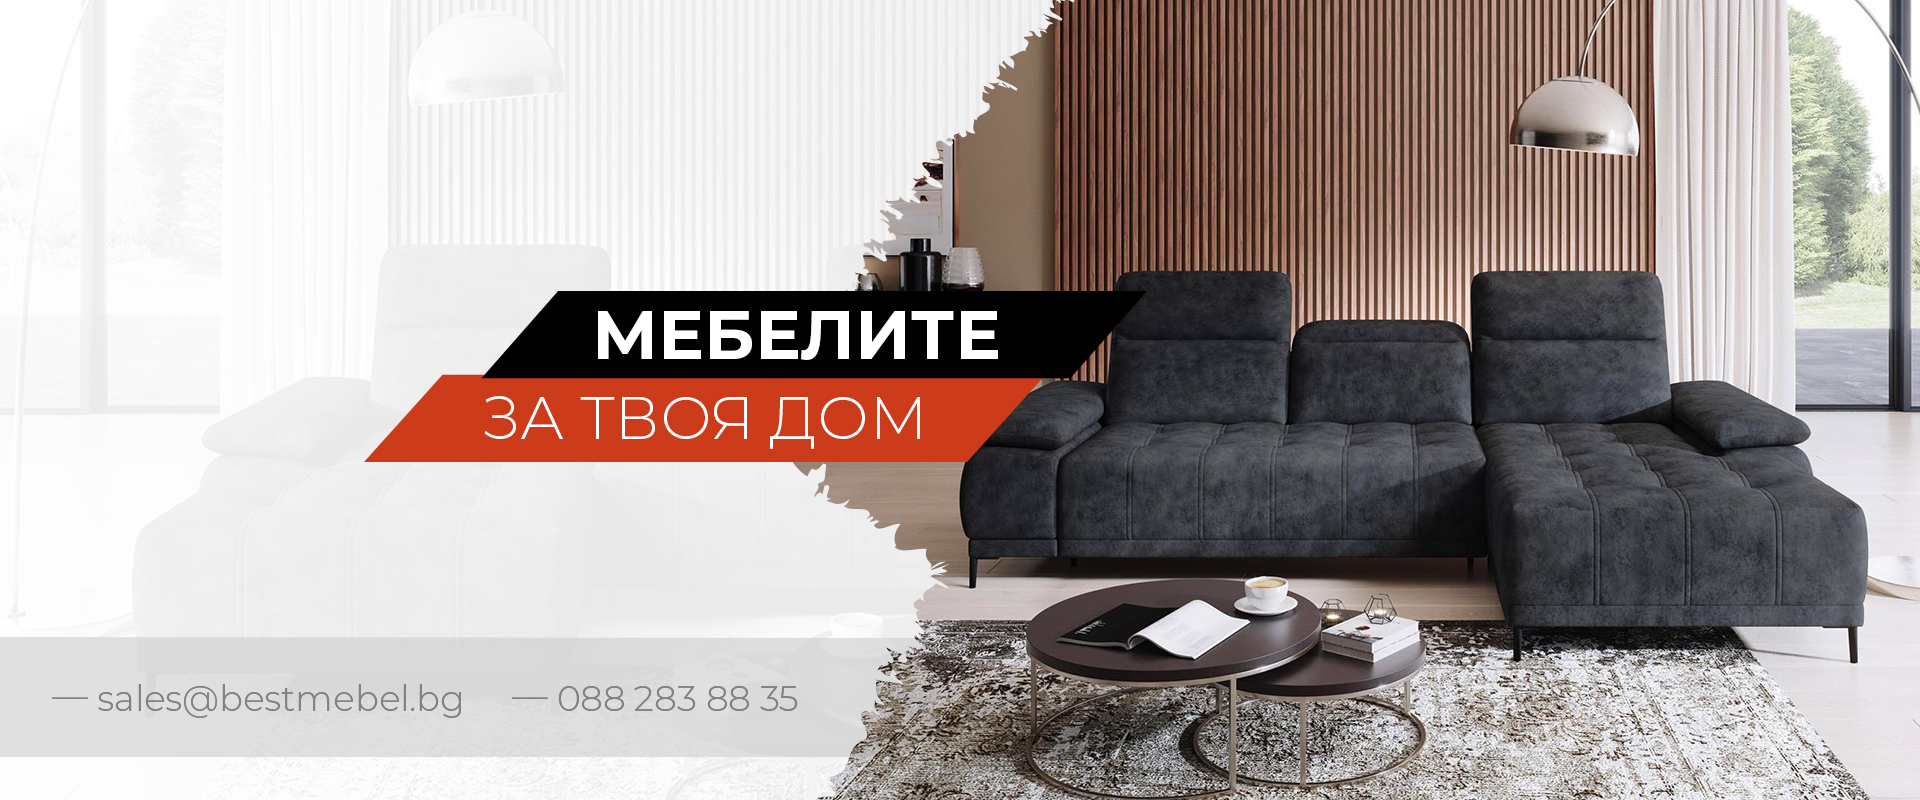 Онлайн магазин за мебели - Bestmebel.bg